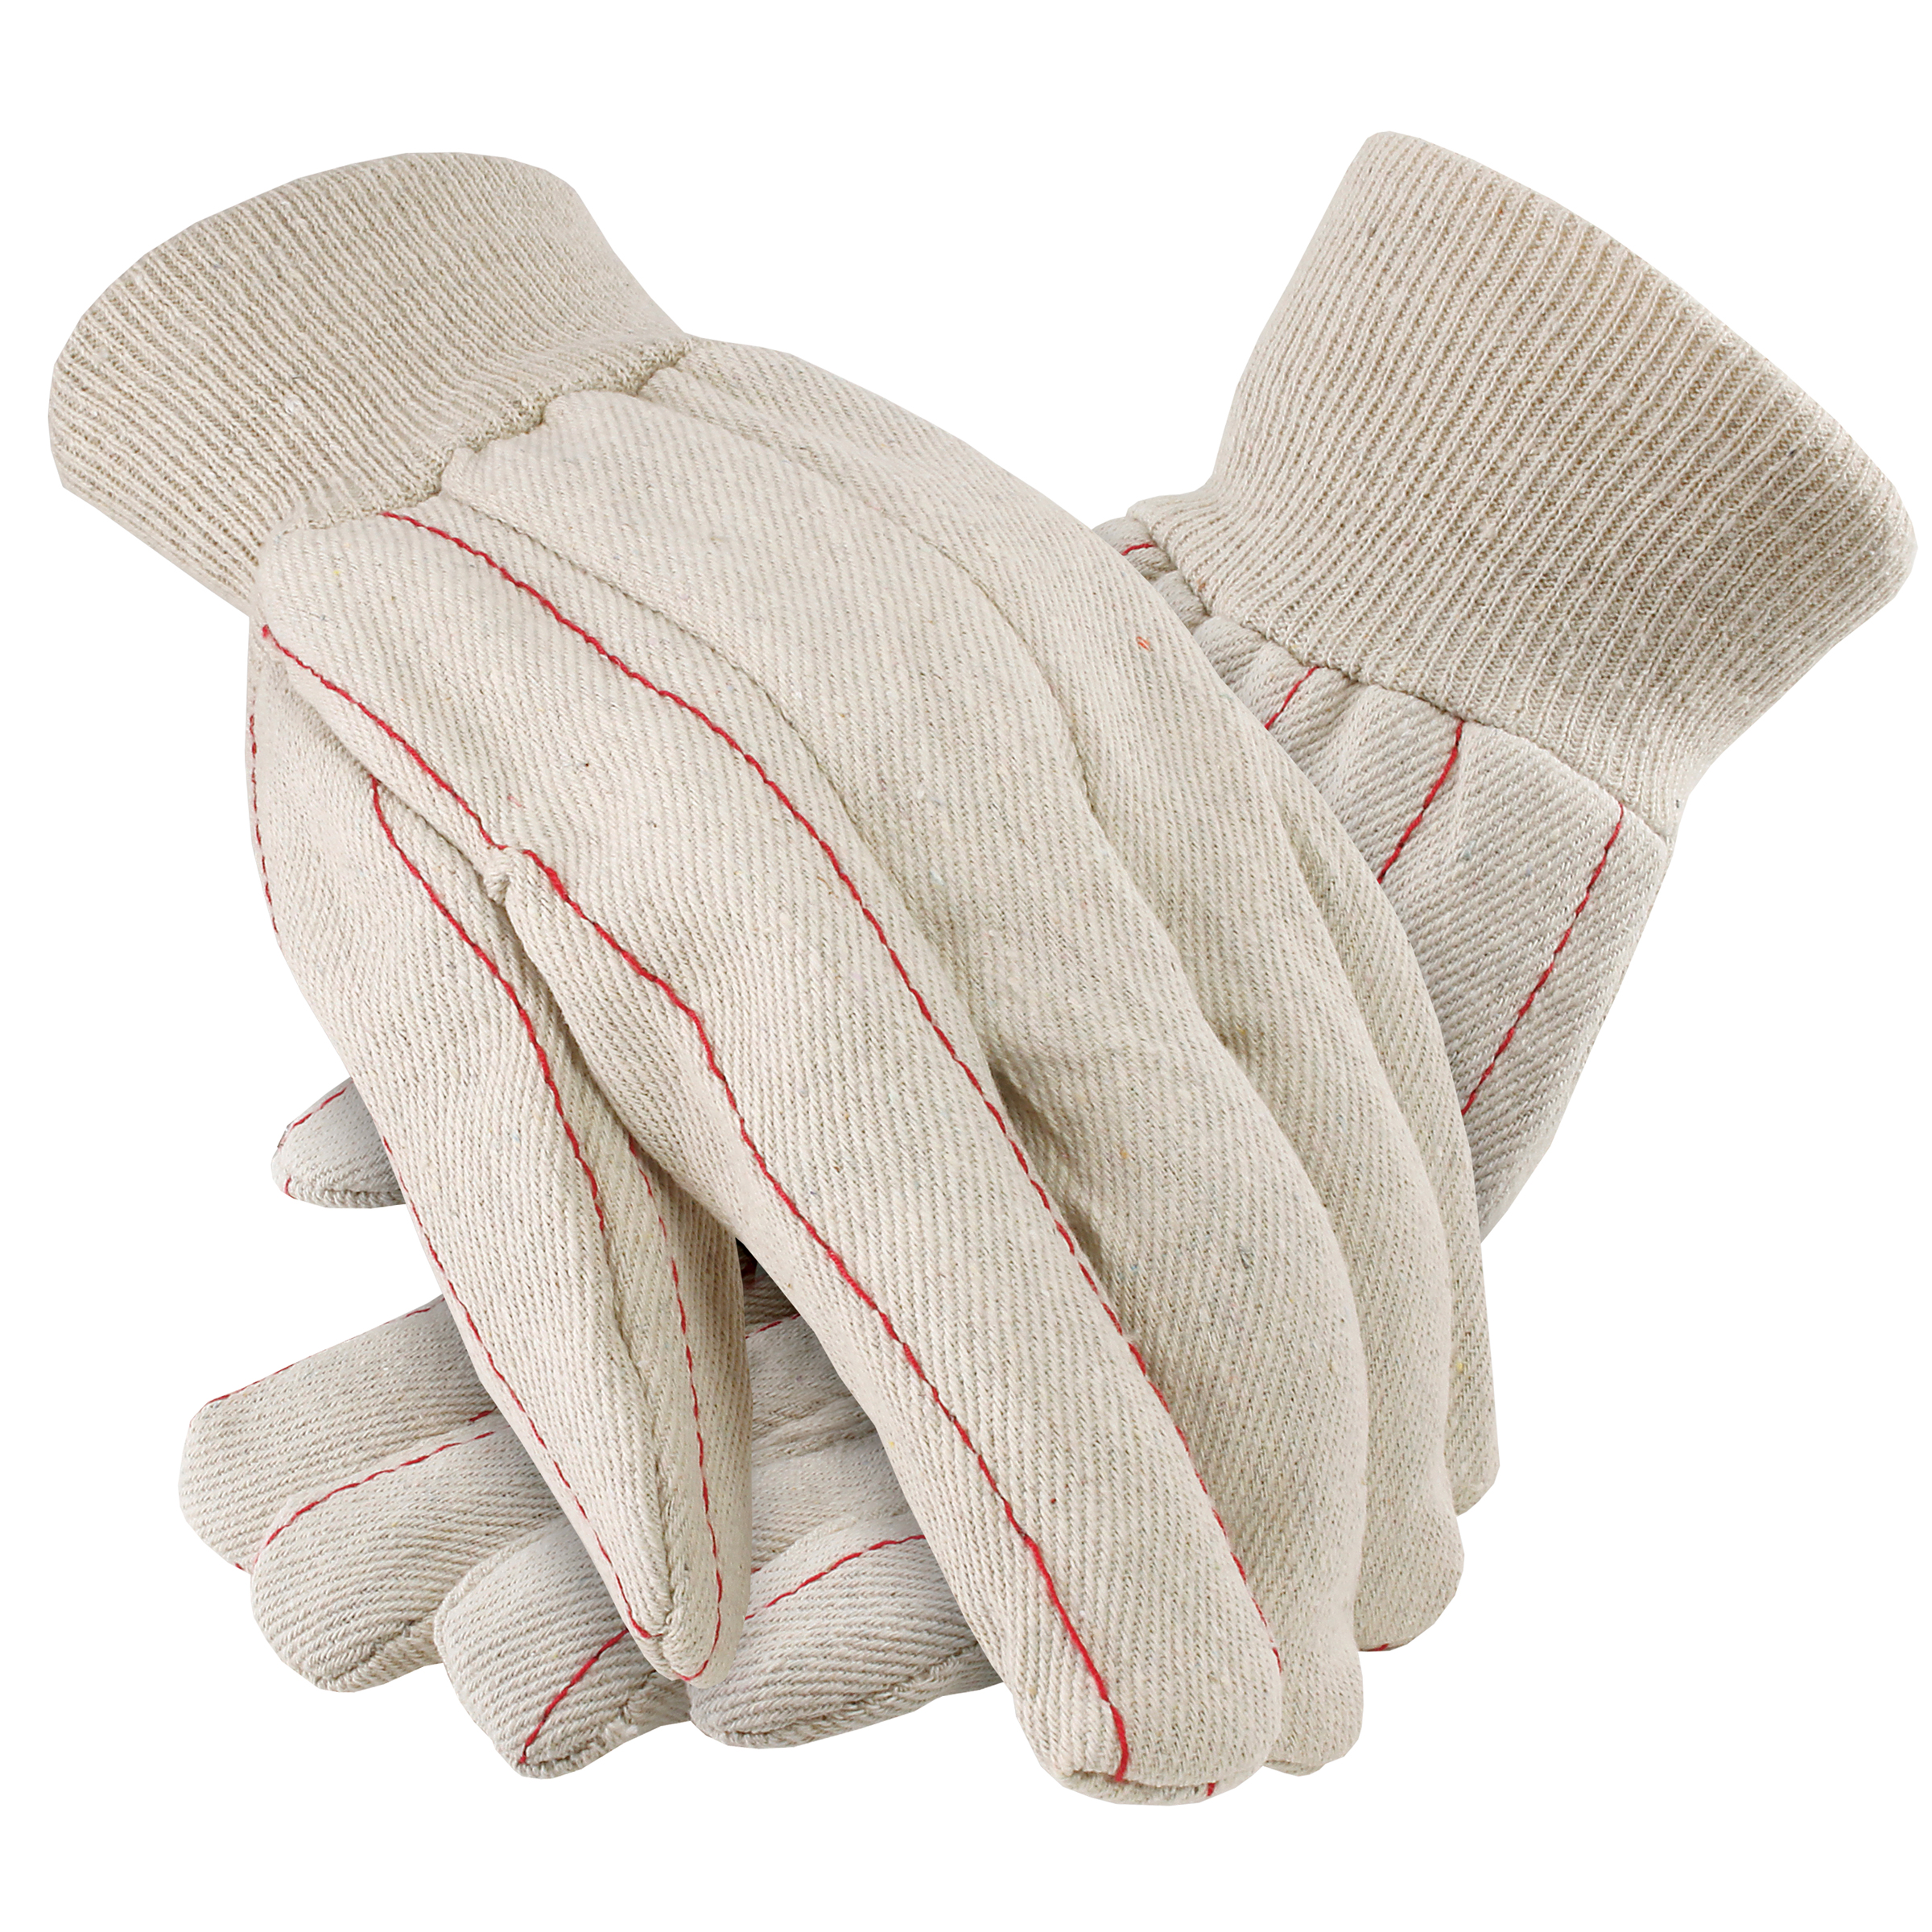 Premium Cotton Double Palm Gloves, Knit Wrist